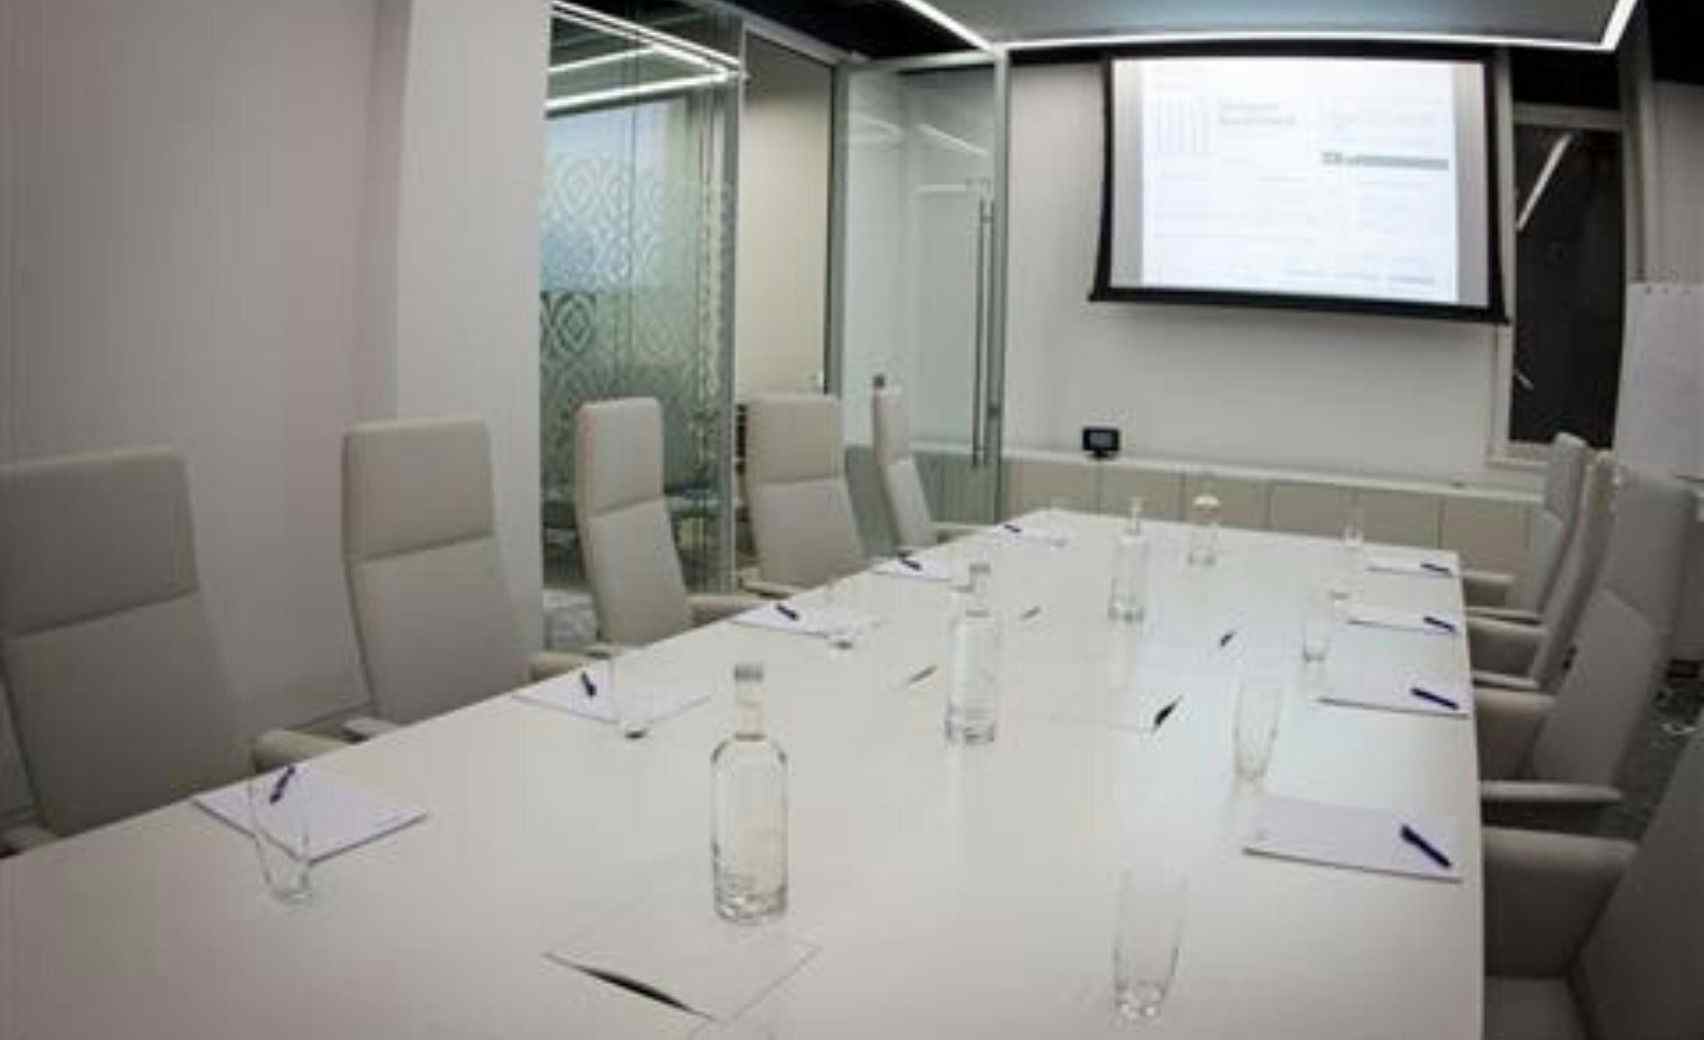 Ground Floor Meeting Room 13, 30 Euston Square